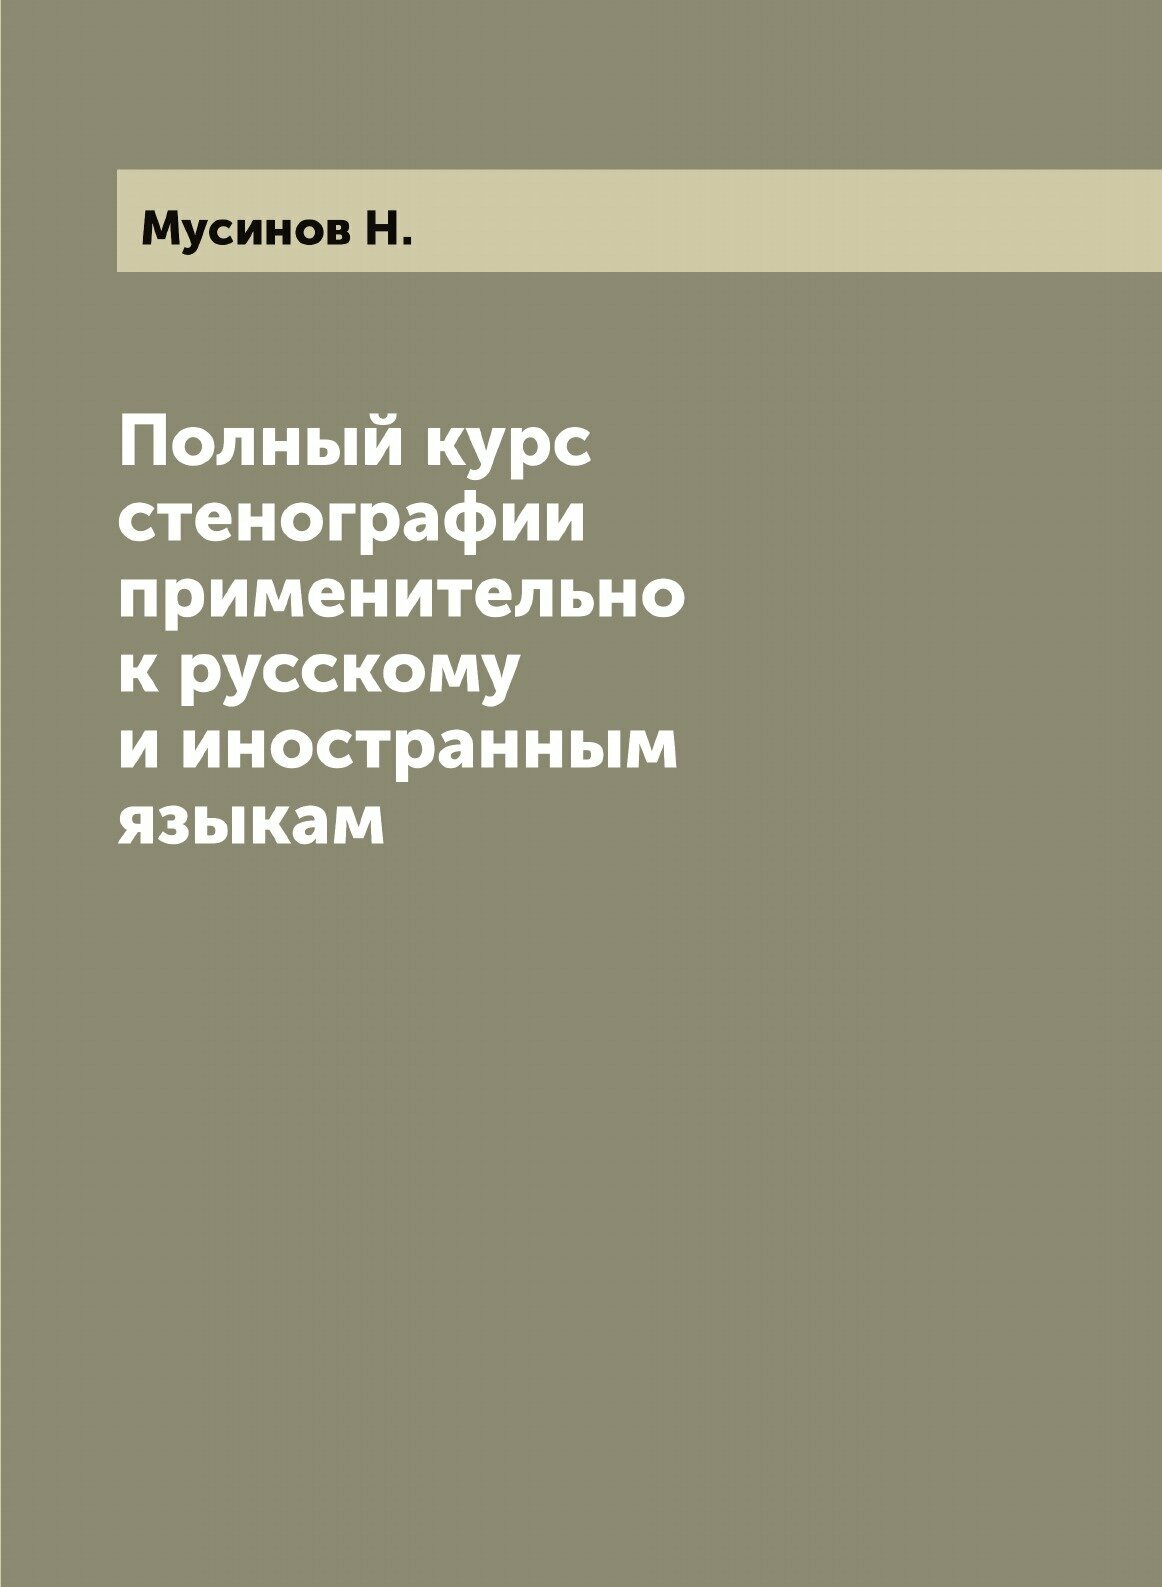 Полный курс стенографии применительно к русскому и иностранным языкам